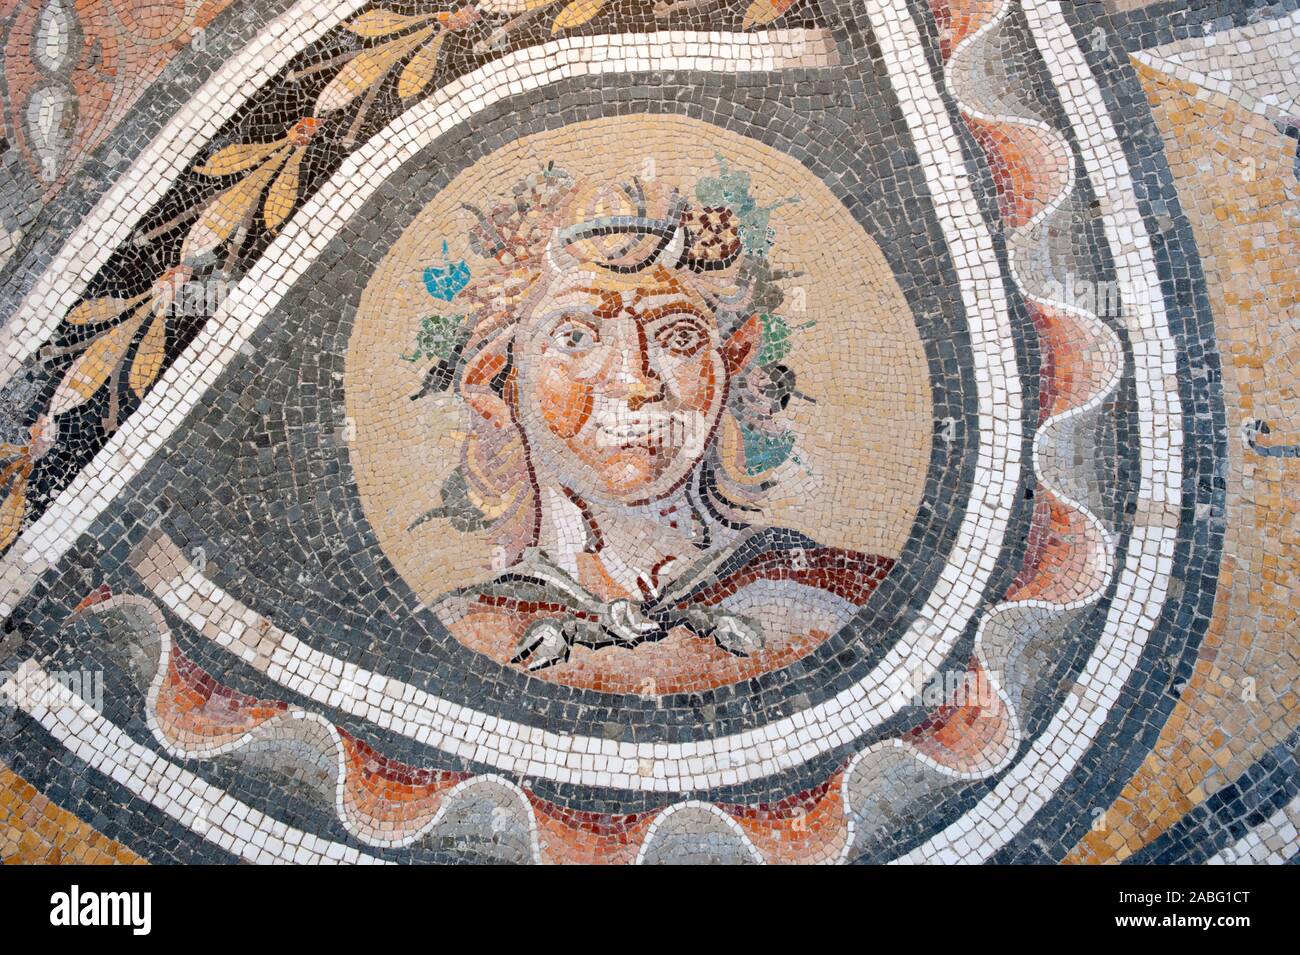 italia, roma, palazzo massimo alle terme, museo nazionale romano, Museo nacional romano, mosaico romano con cabeza de dios pan (siglo II DC) Foto de stock